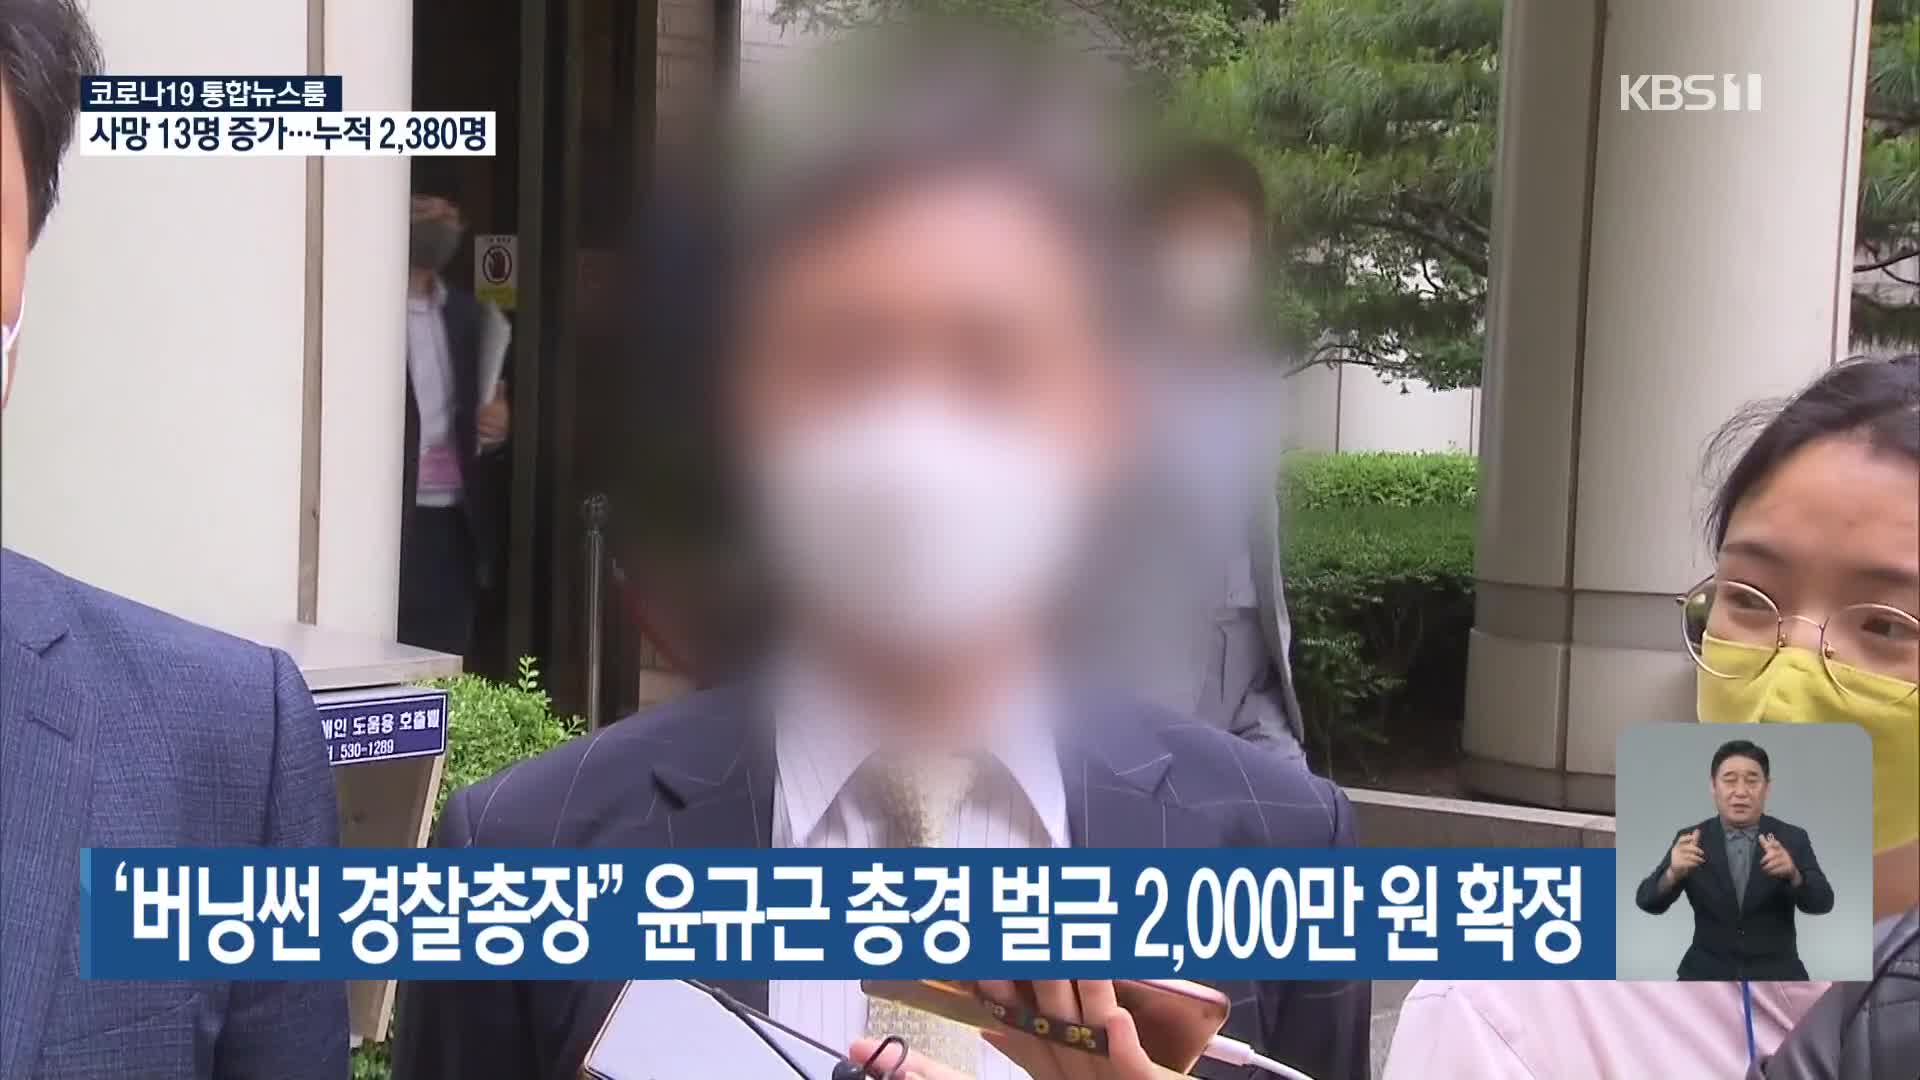 ‘버닝썬 경찰총장’ 윤규근 총경 벌금 2,000만 원 확정